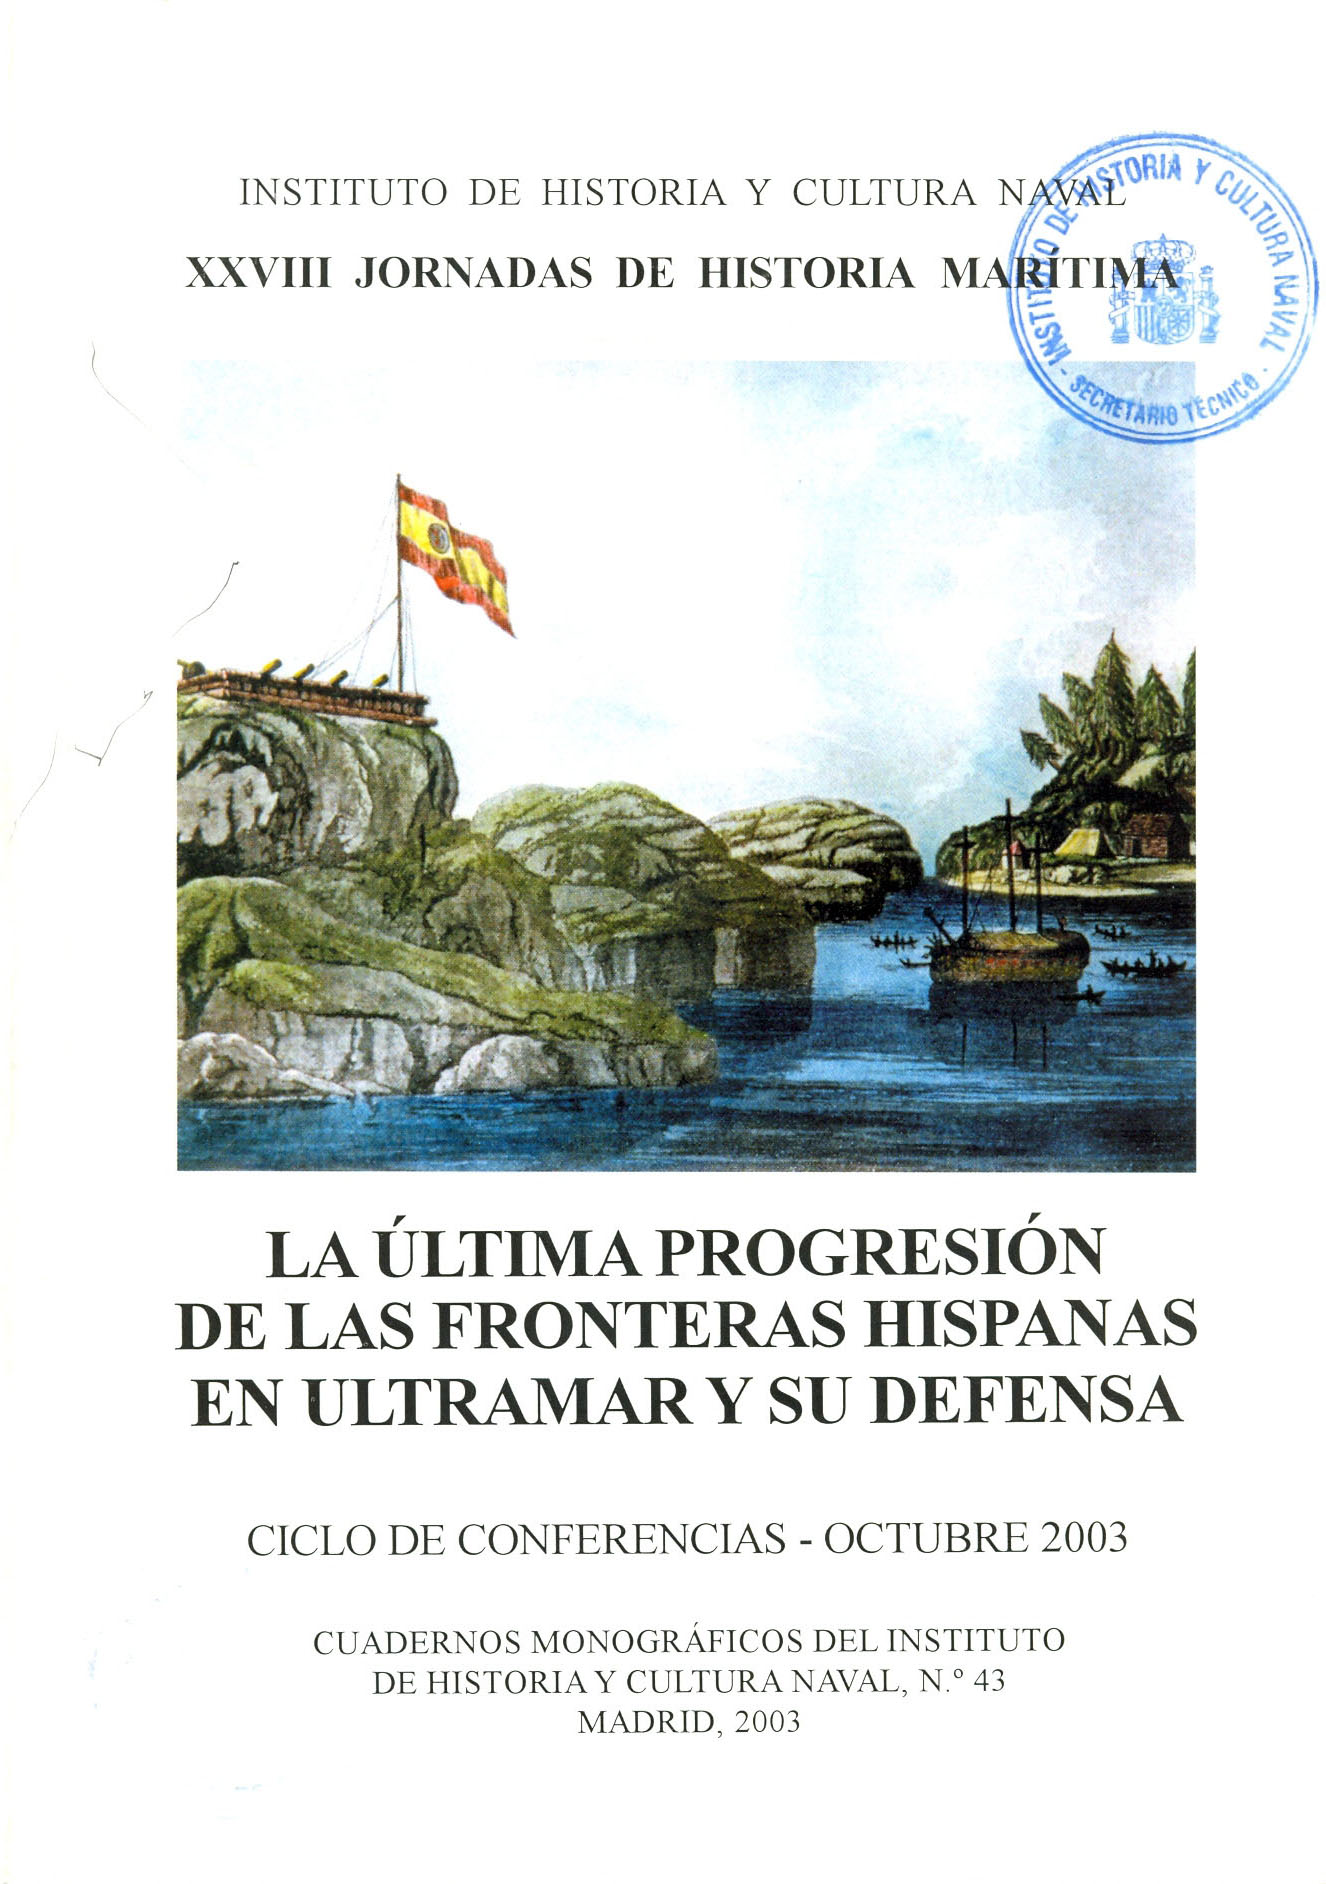 La última progresión de las fronteras hispanas en ultramar y su defensa